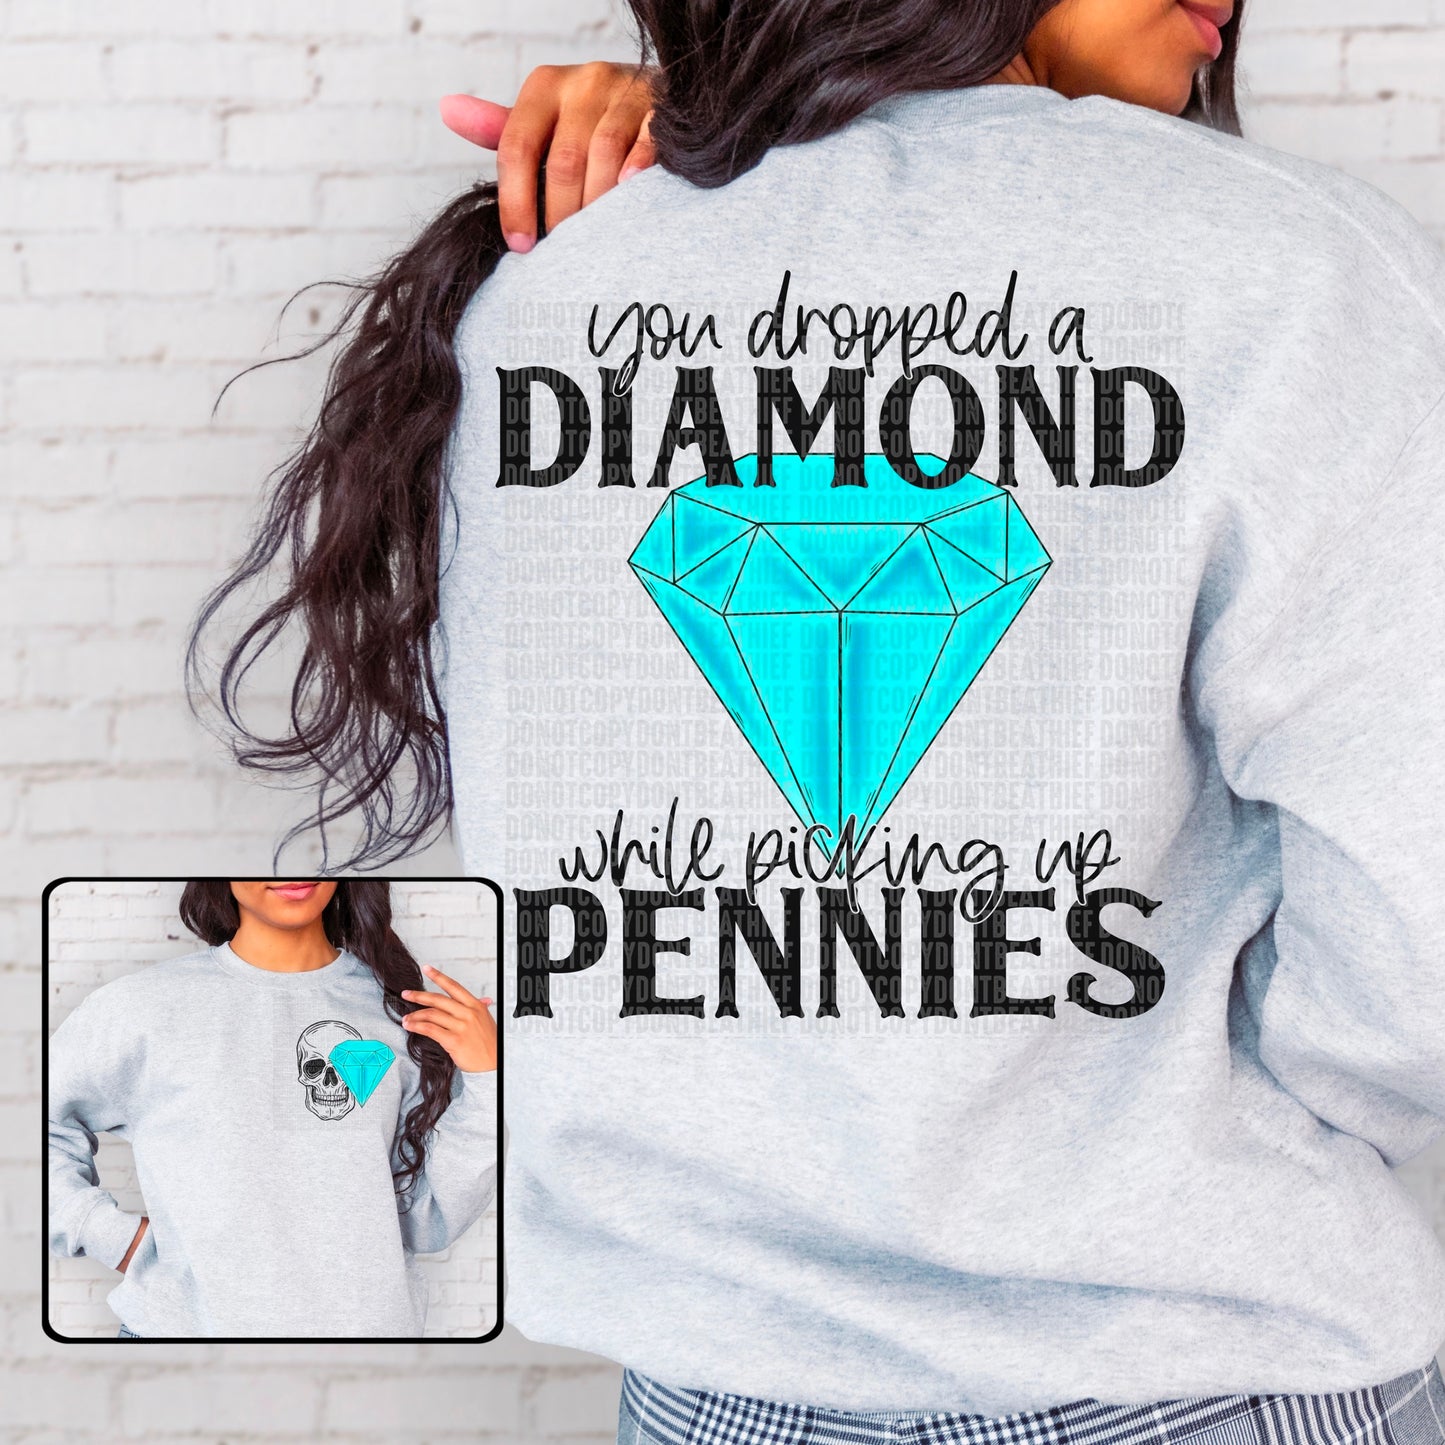 You dropped a diamond